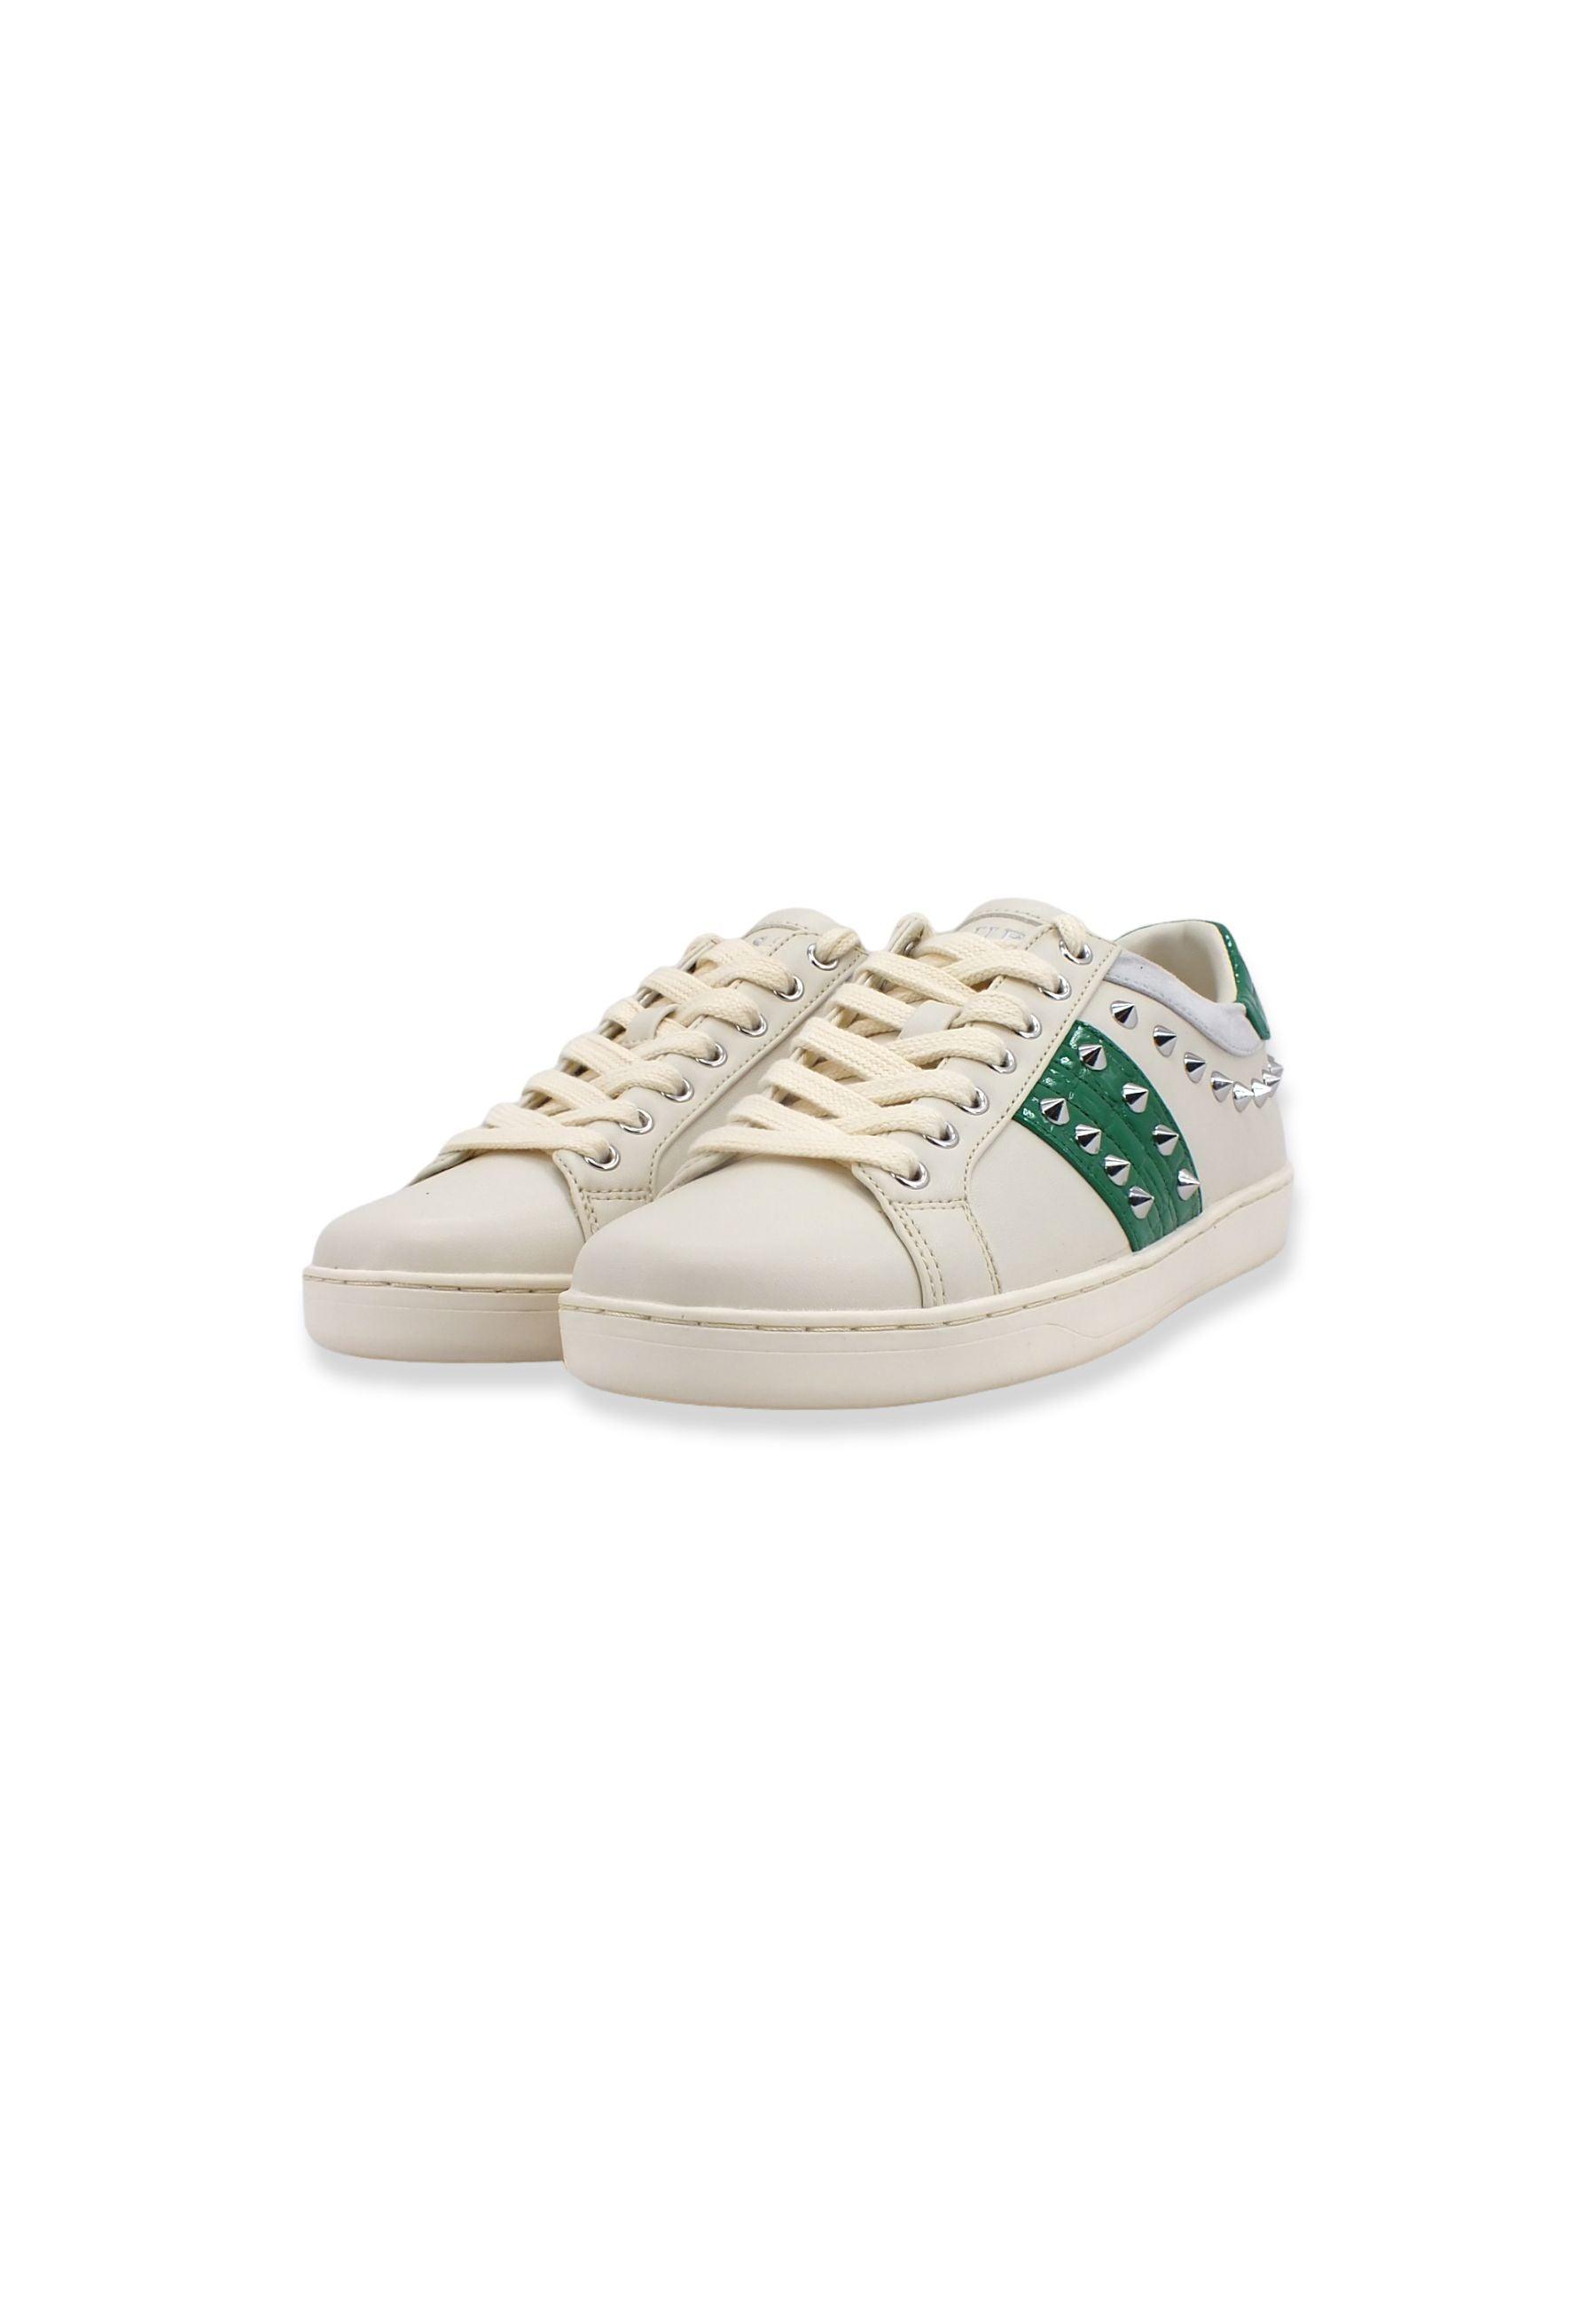 GUESS Sneaker Donna Borchie White Green FL7R2LLEA12 - Sandrini Calzature e Abbigliamento